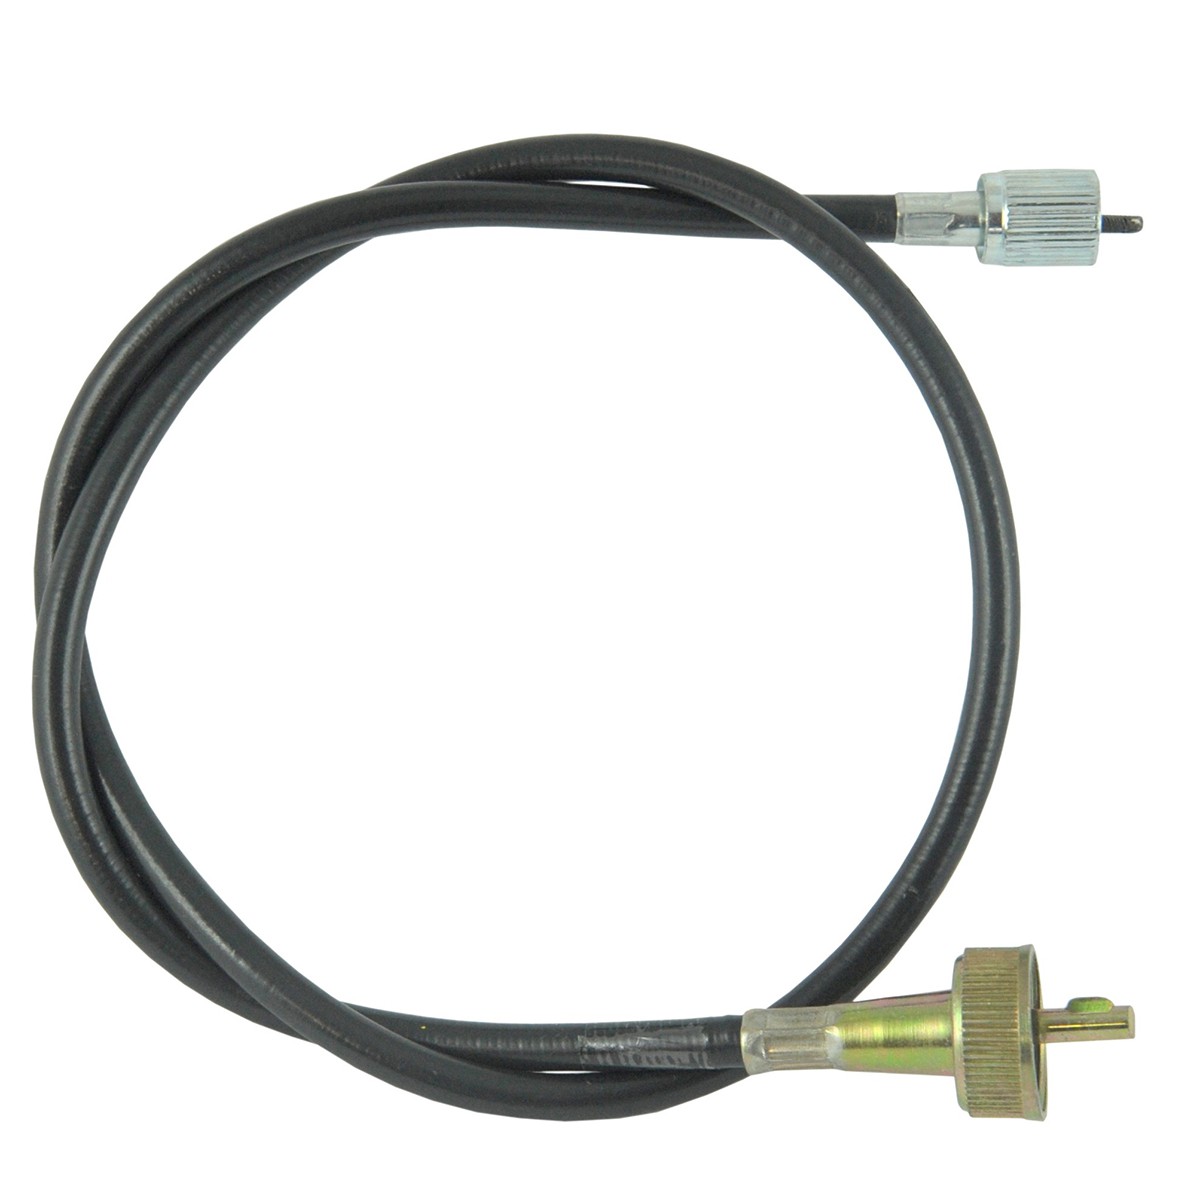 Cable contador / 825 mm / Iseki TA230/TE4350/TE4270/TS2205/TU2300 / 1444-621-003-00 / 9-25-107-04